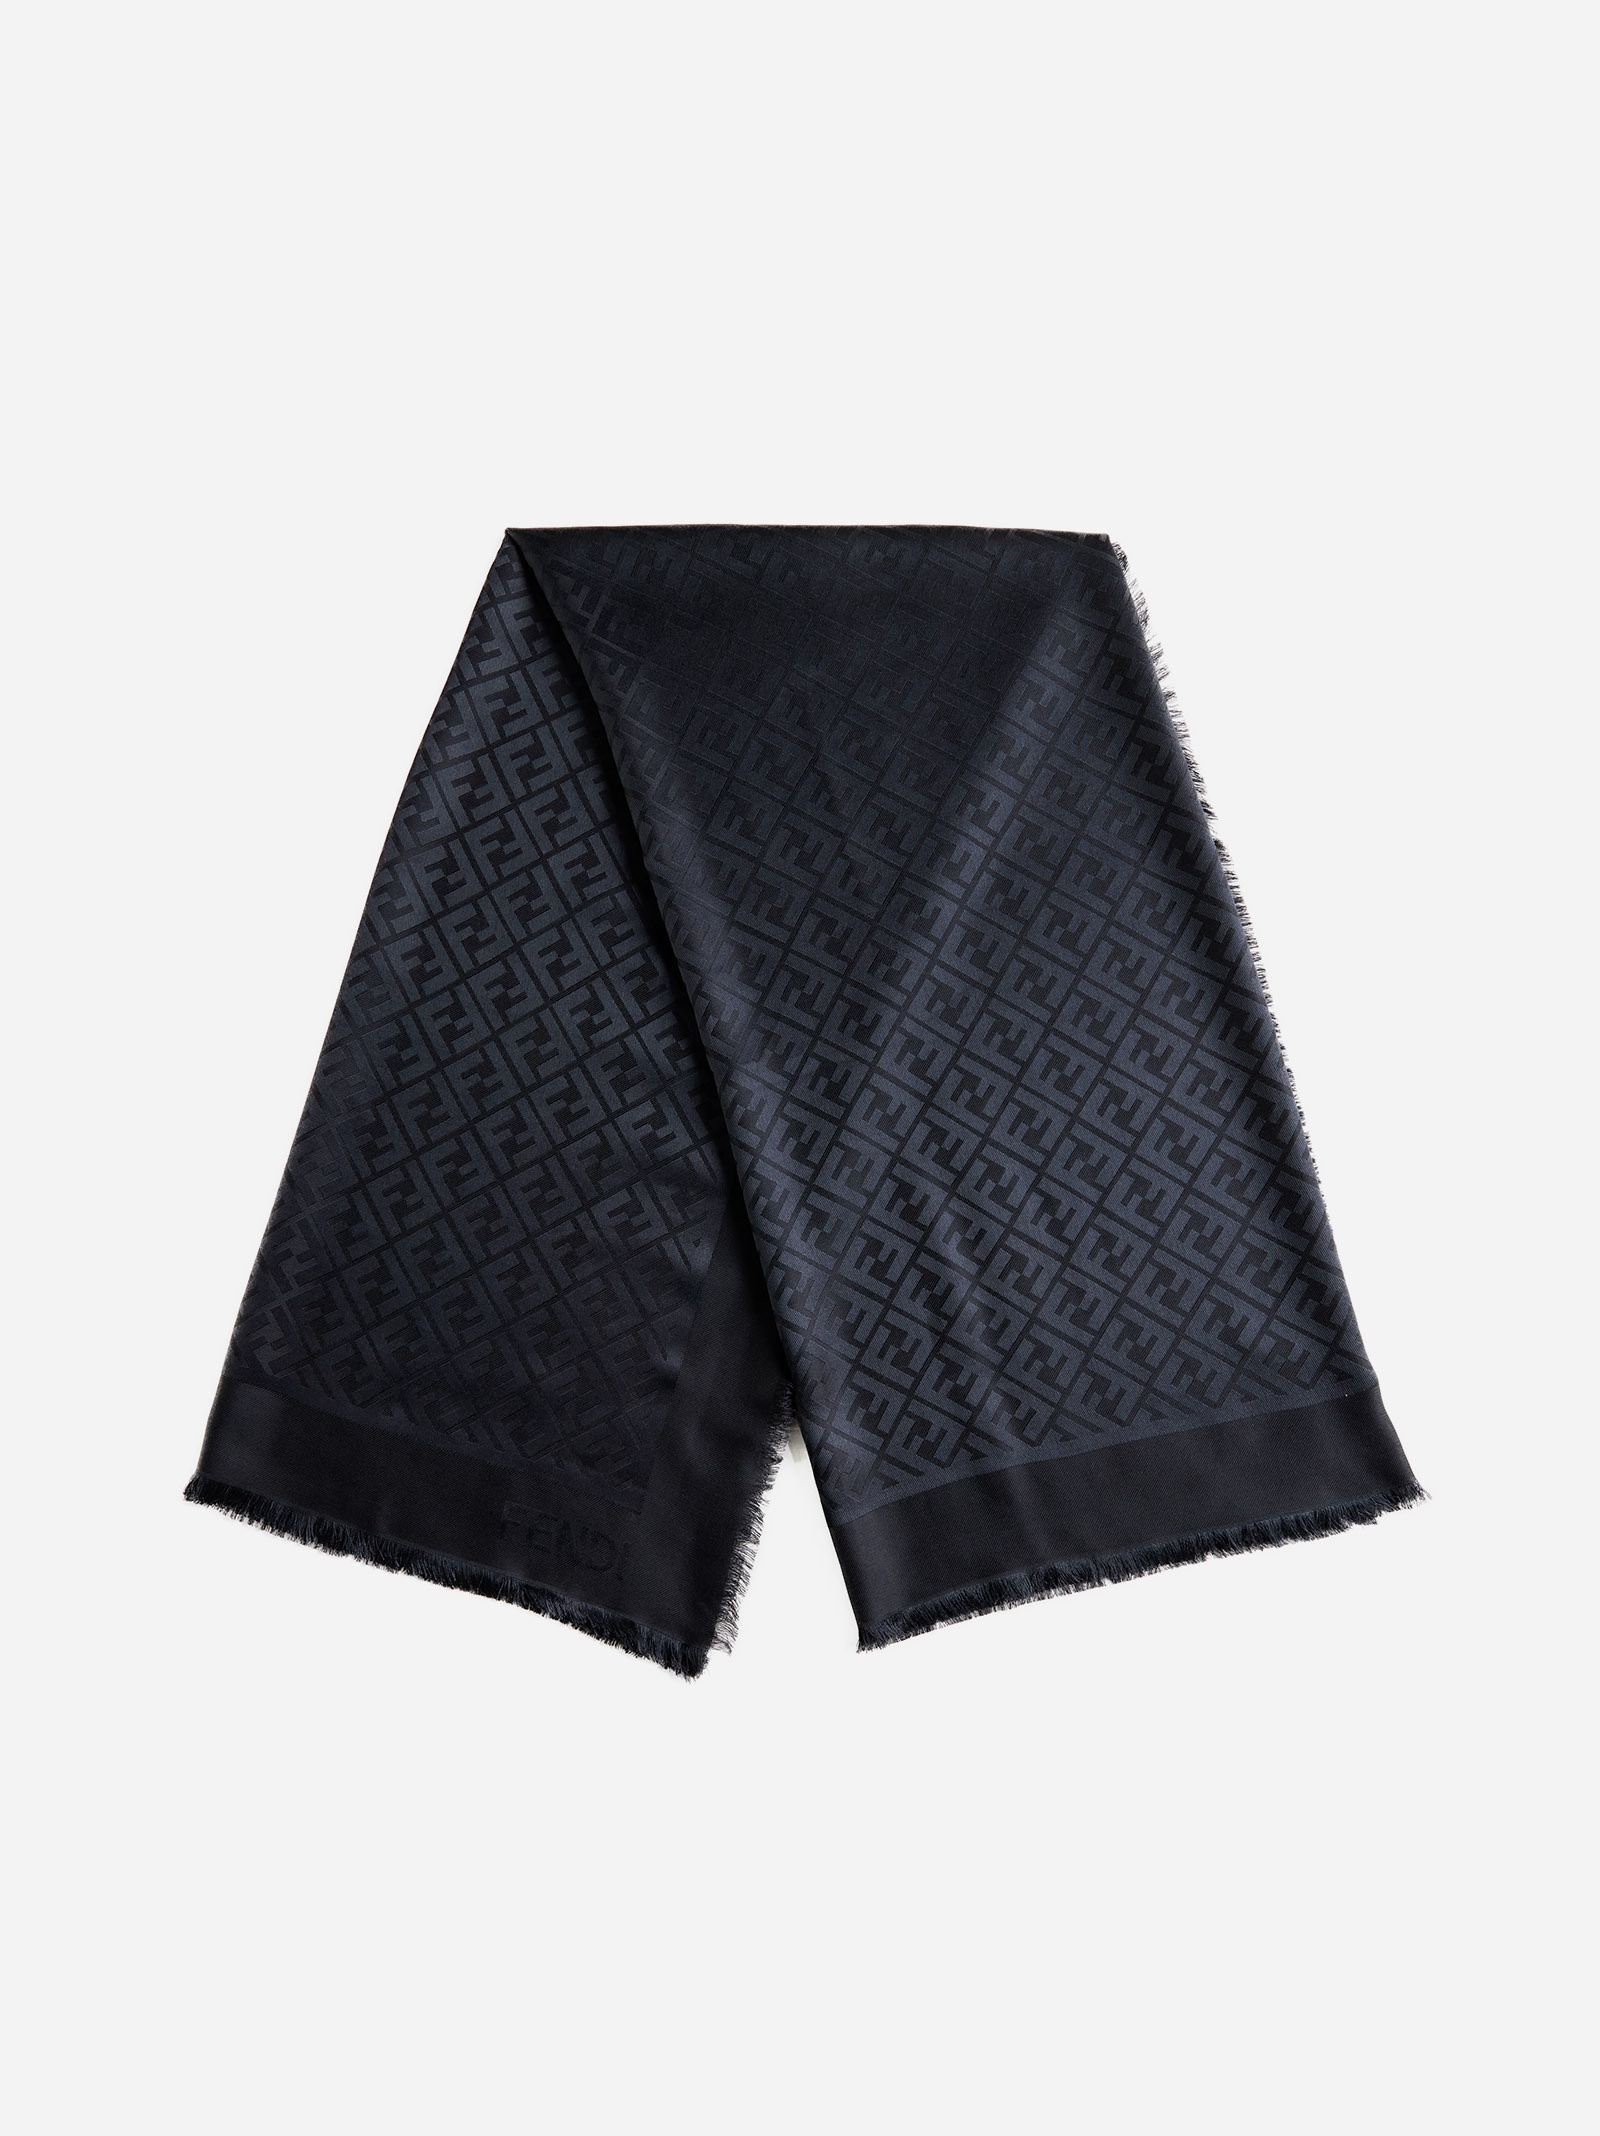 FF silk and wool shawl - 3